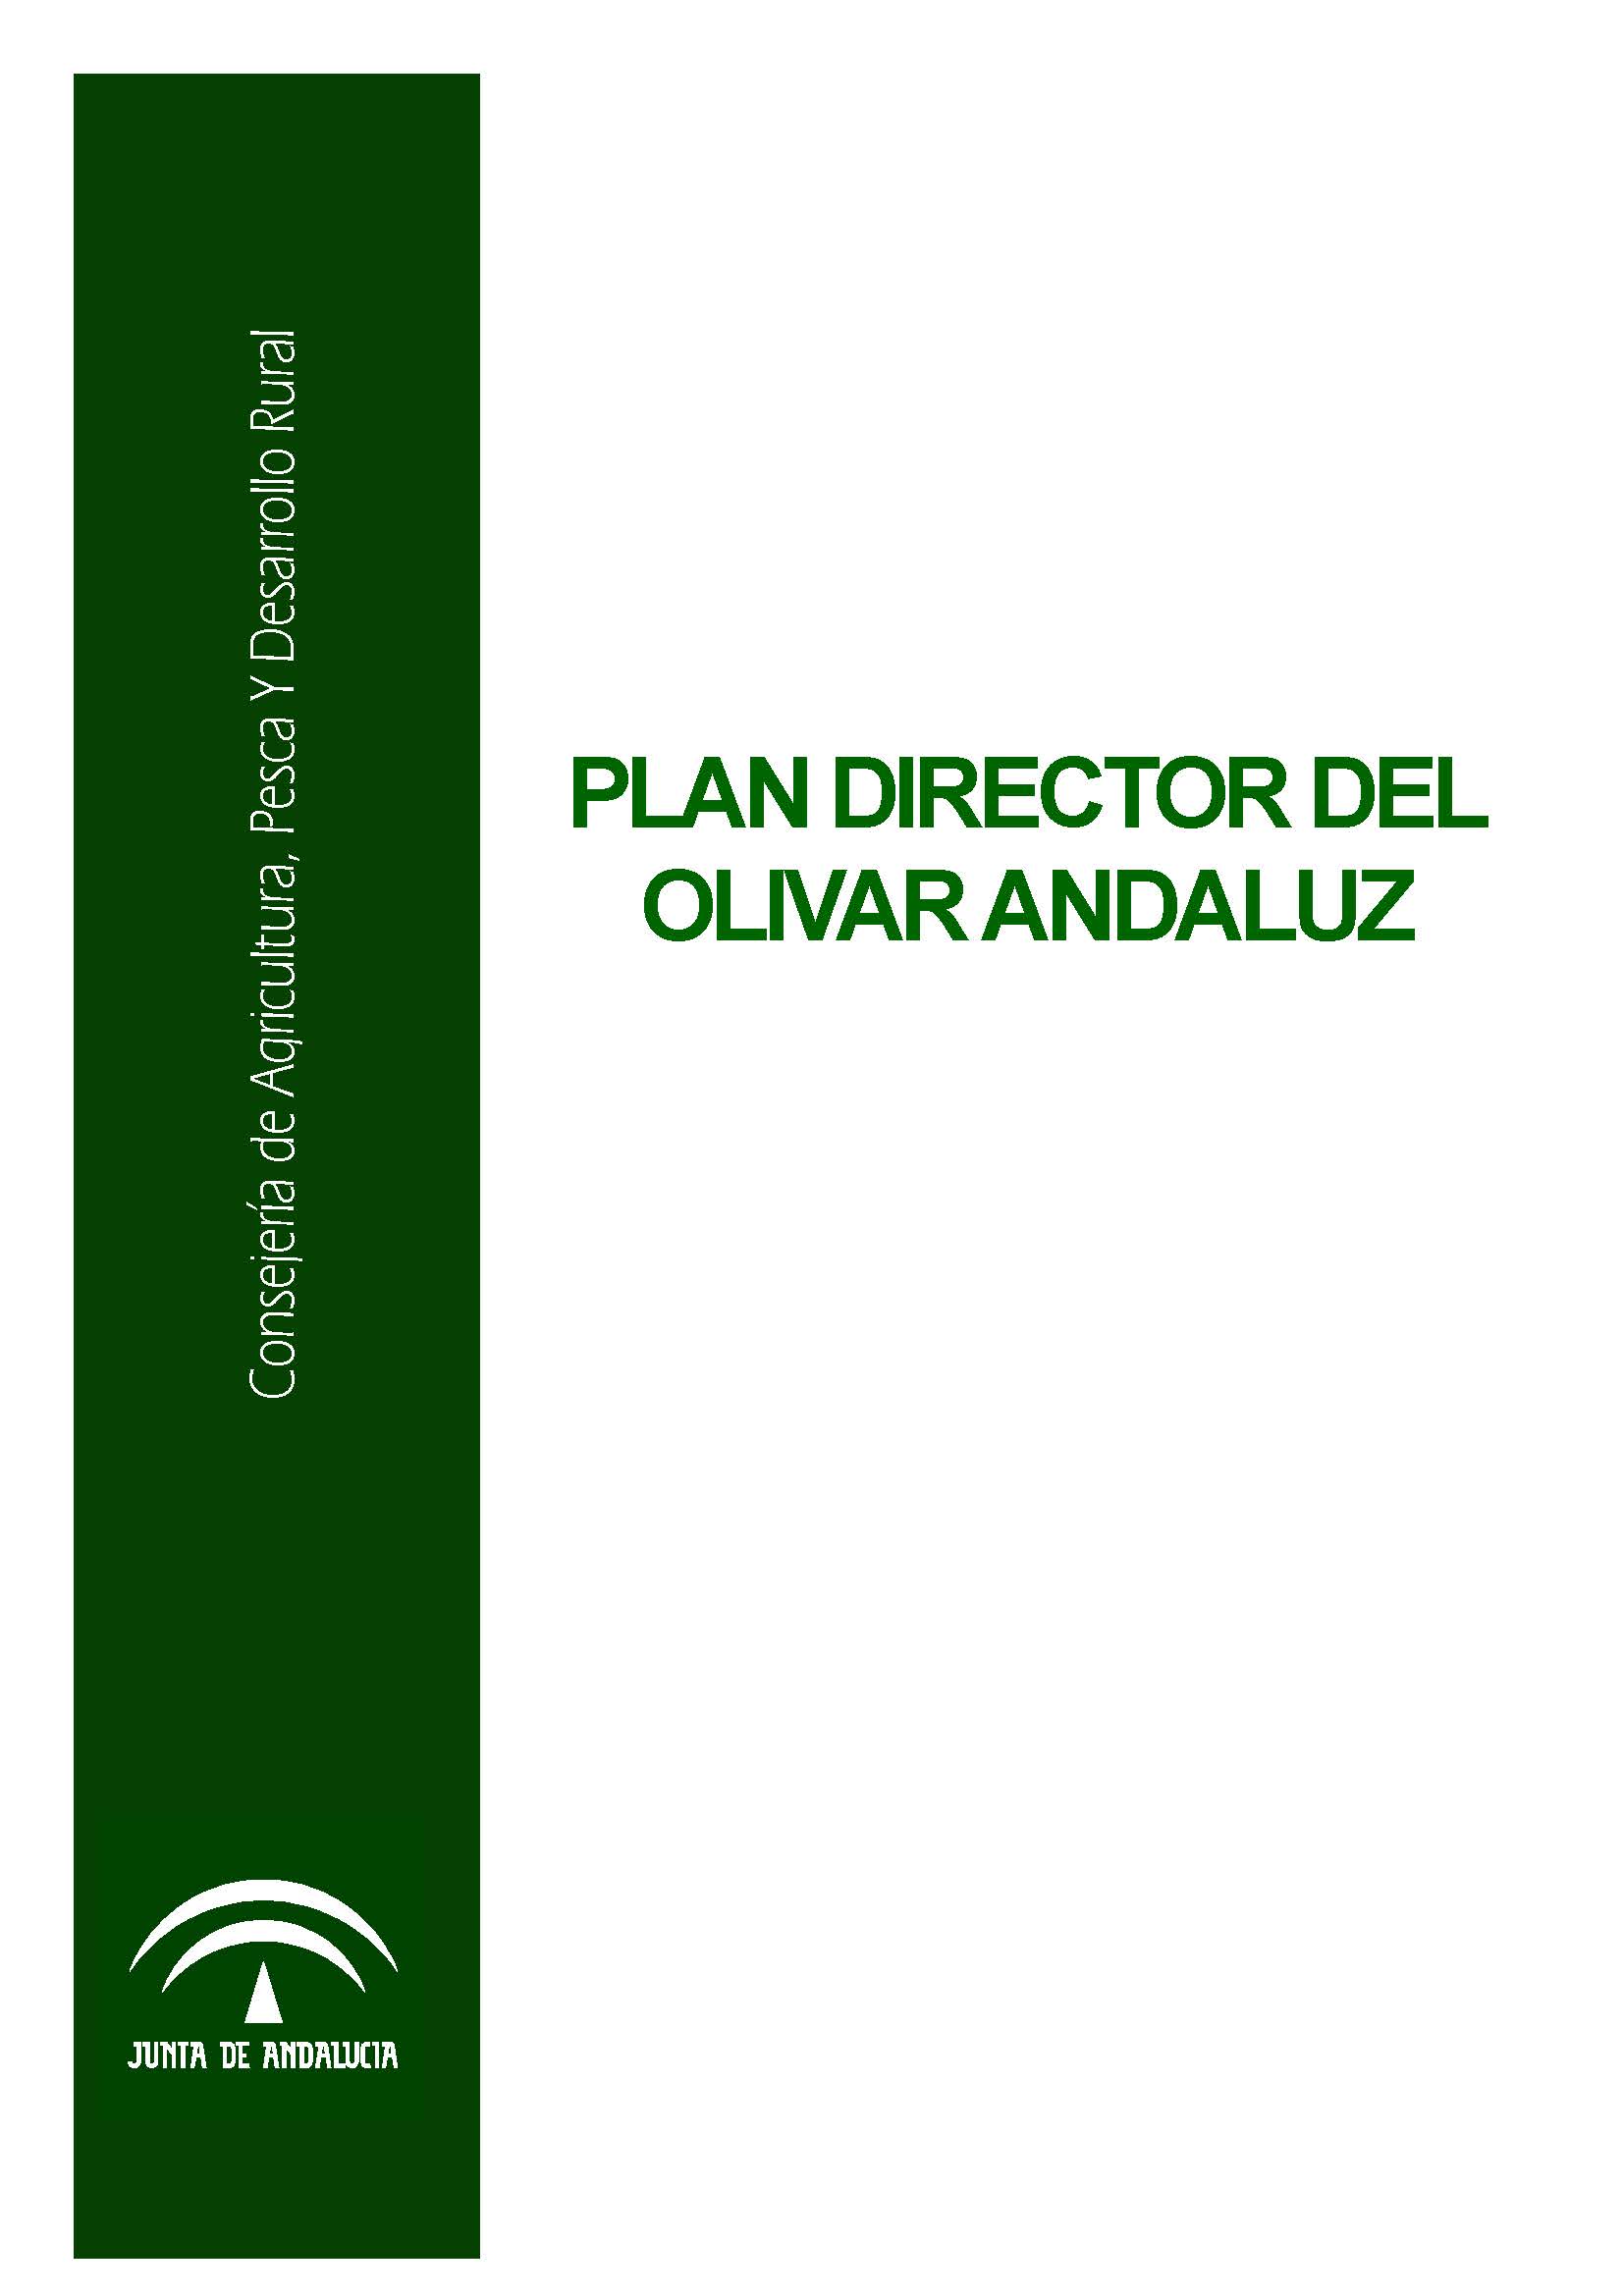 Plan Director del Olivar 1.jpg